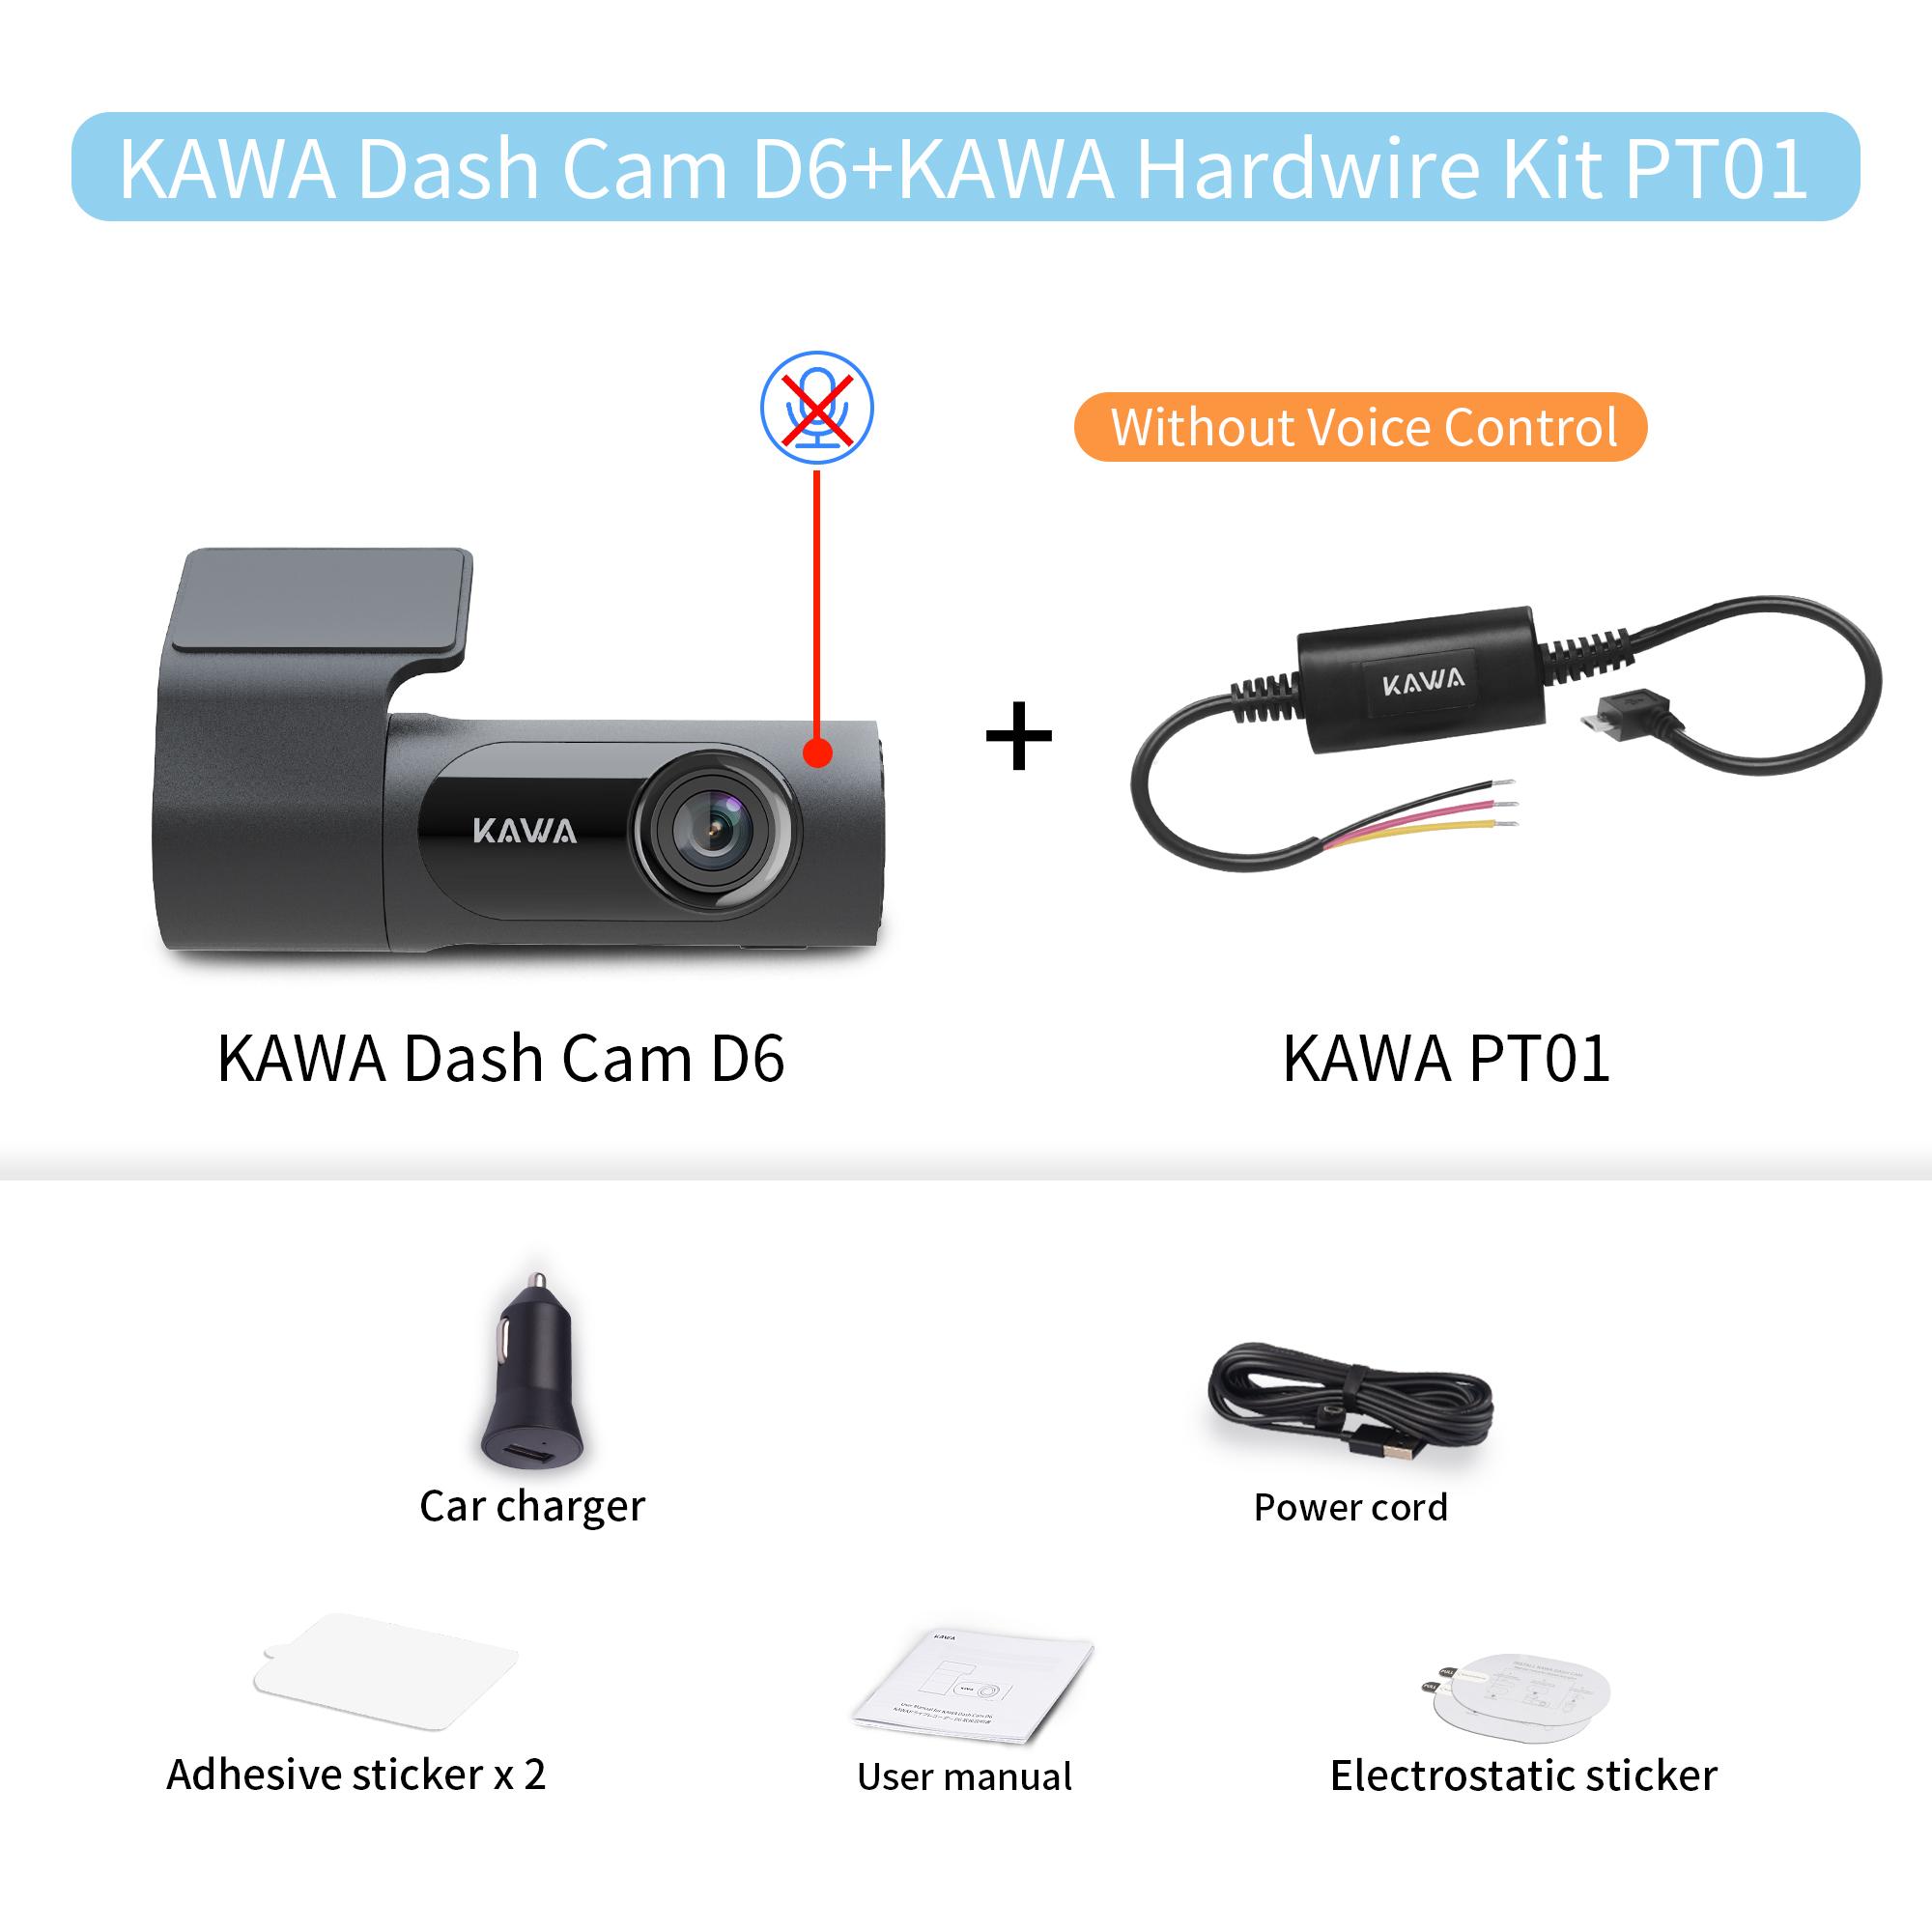 KAWA 2K 1440P HD WiFi Dash Cam cho DVR Xe Ô Tô Camera Ghi Video Tự động Nhìn Ban Đêm WDR Điều Khiển Bằng Giọng Nói Chế Độ Đỗ Xe 24H Không Dây Tên màu: D6 no VC HW Kit